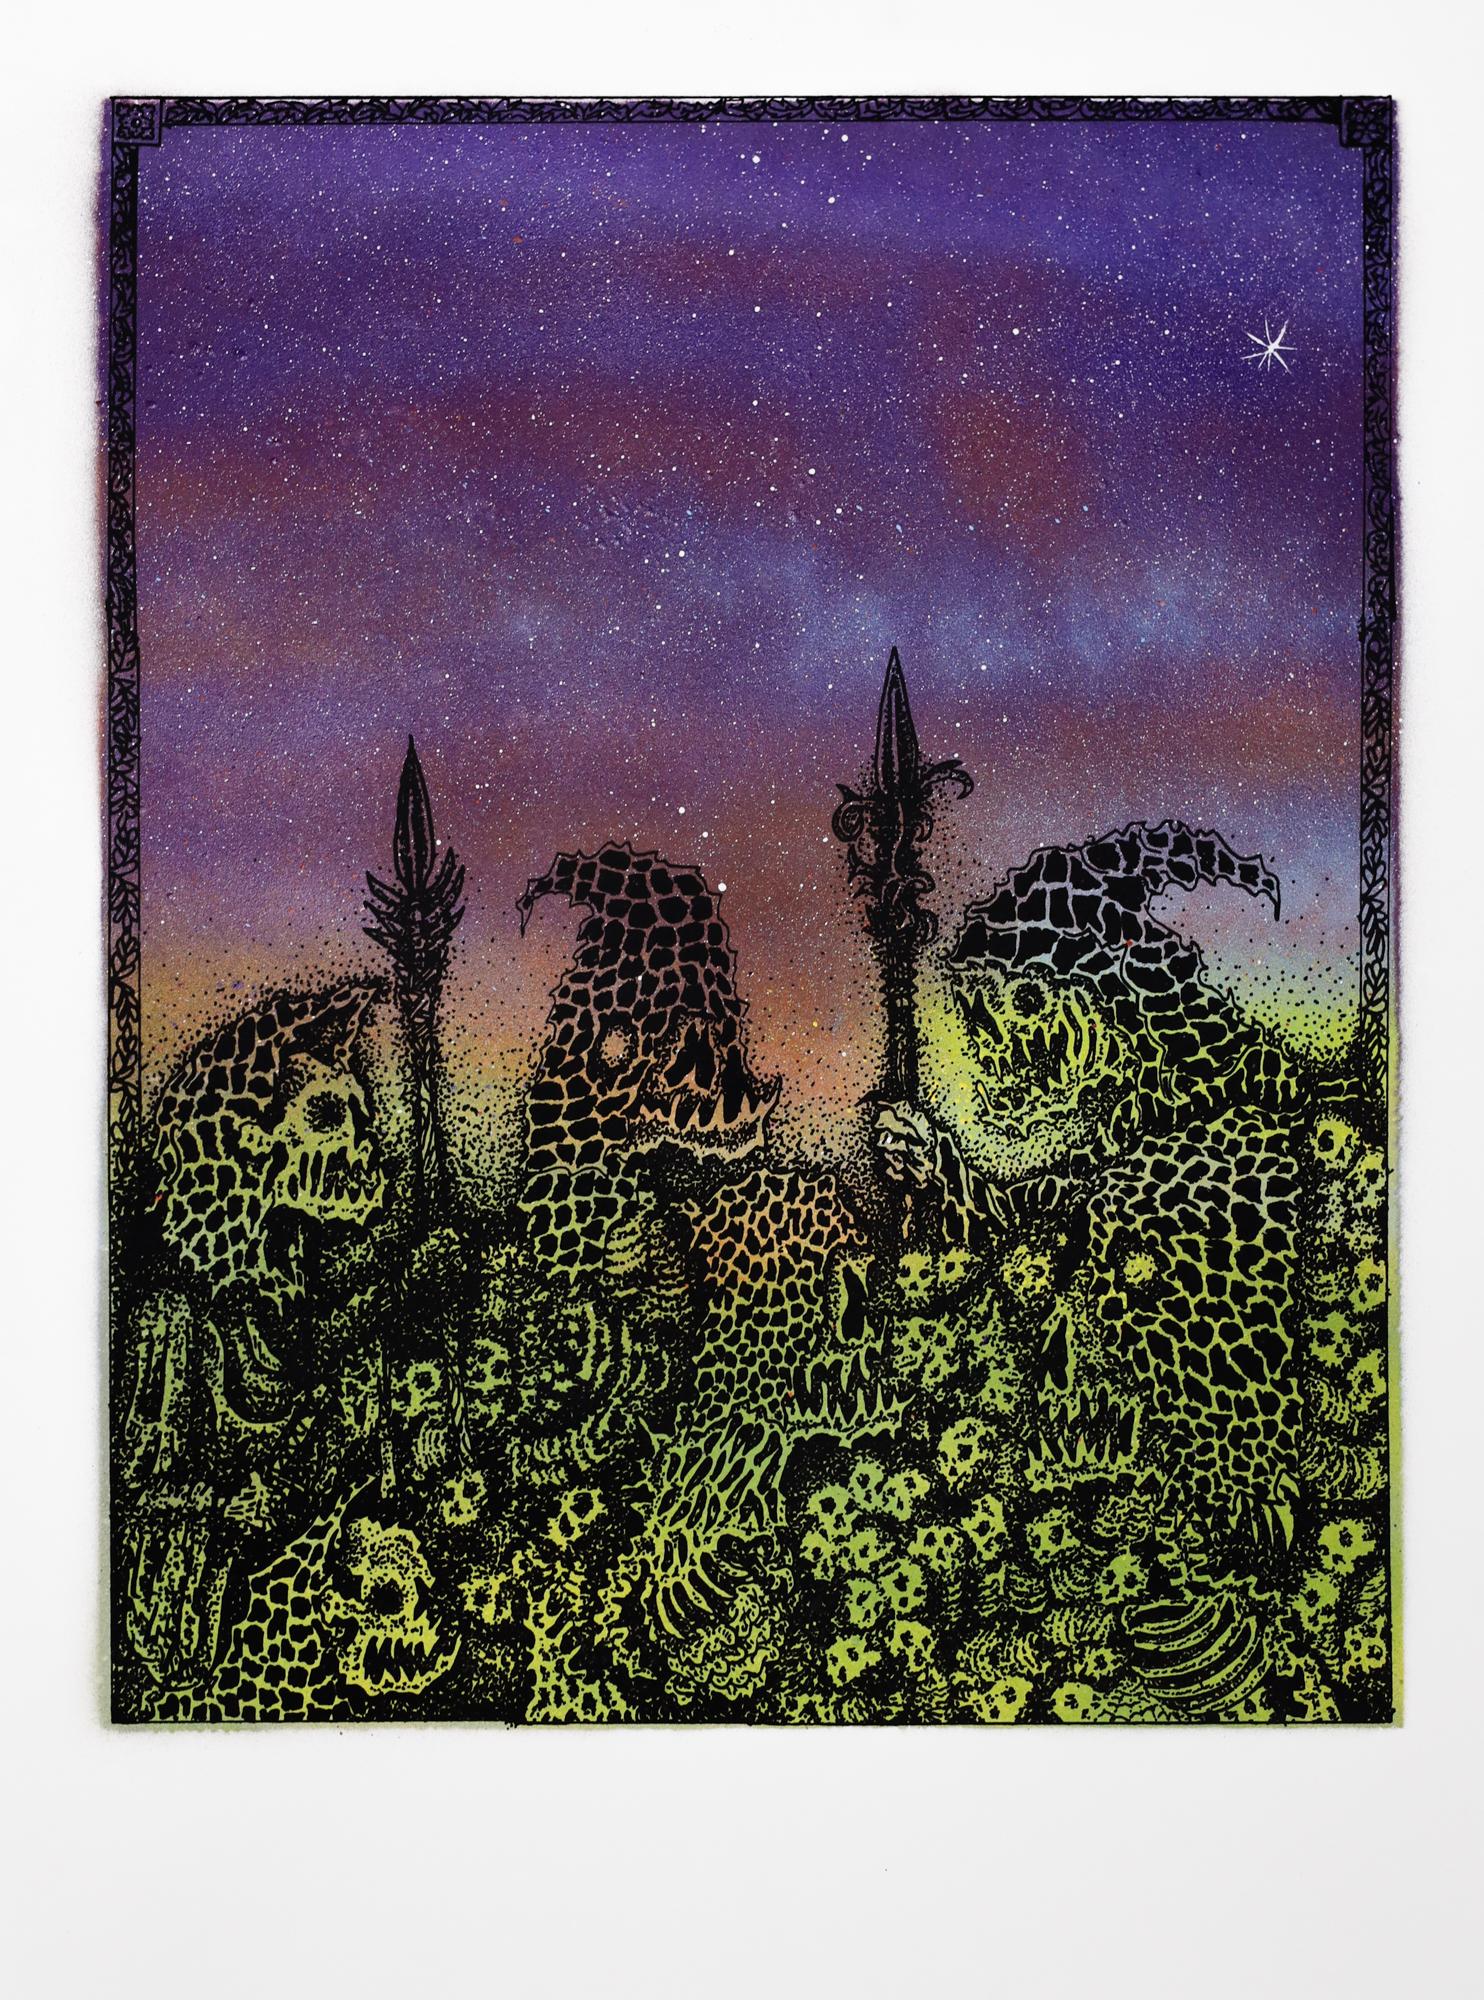 Dieses Werk mit dem Titel "Jake Yeager Untitled 12" ist ein Originalkunstwerk von Jake Yeager und wurde mit Sprühfarbe und Siebdruck hergestellt. Dieses Stück misst 24 "h x 18 "b.

Der 1997 in der Arch Street 1026 in Philadelphias Chinatown